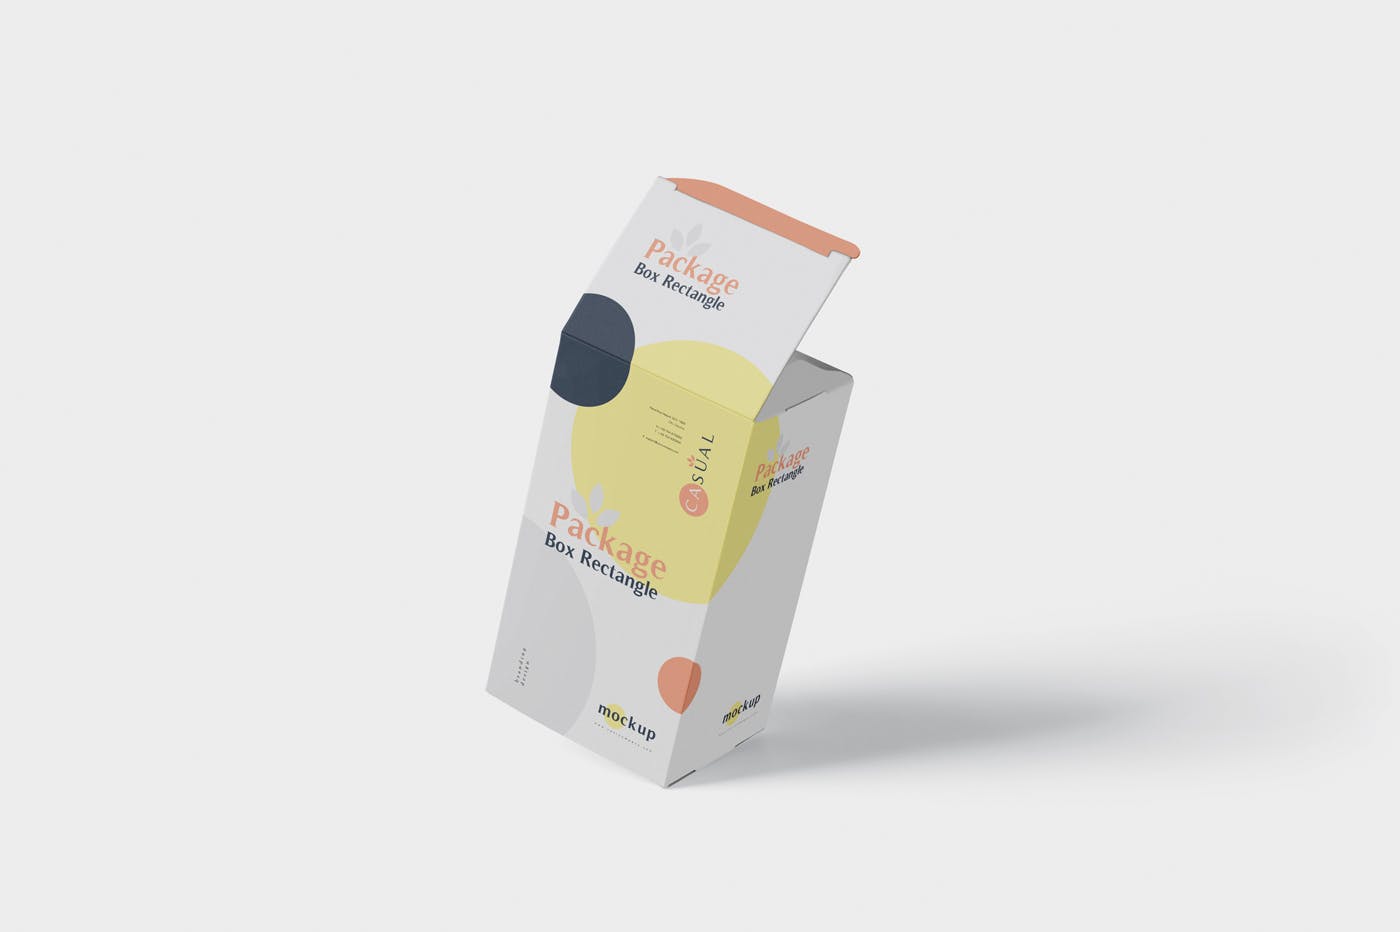 矩形产品包装盒外观设计效果图样机 Package Box Mock-Up – Rectangle插图(2)